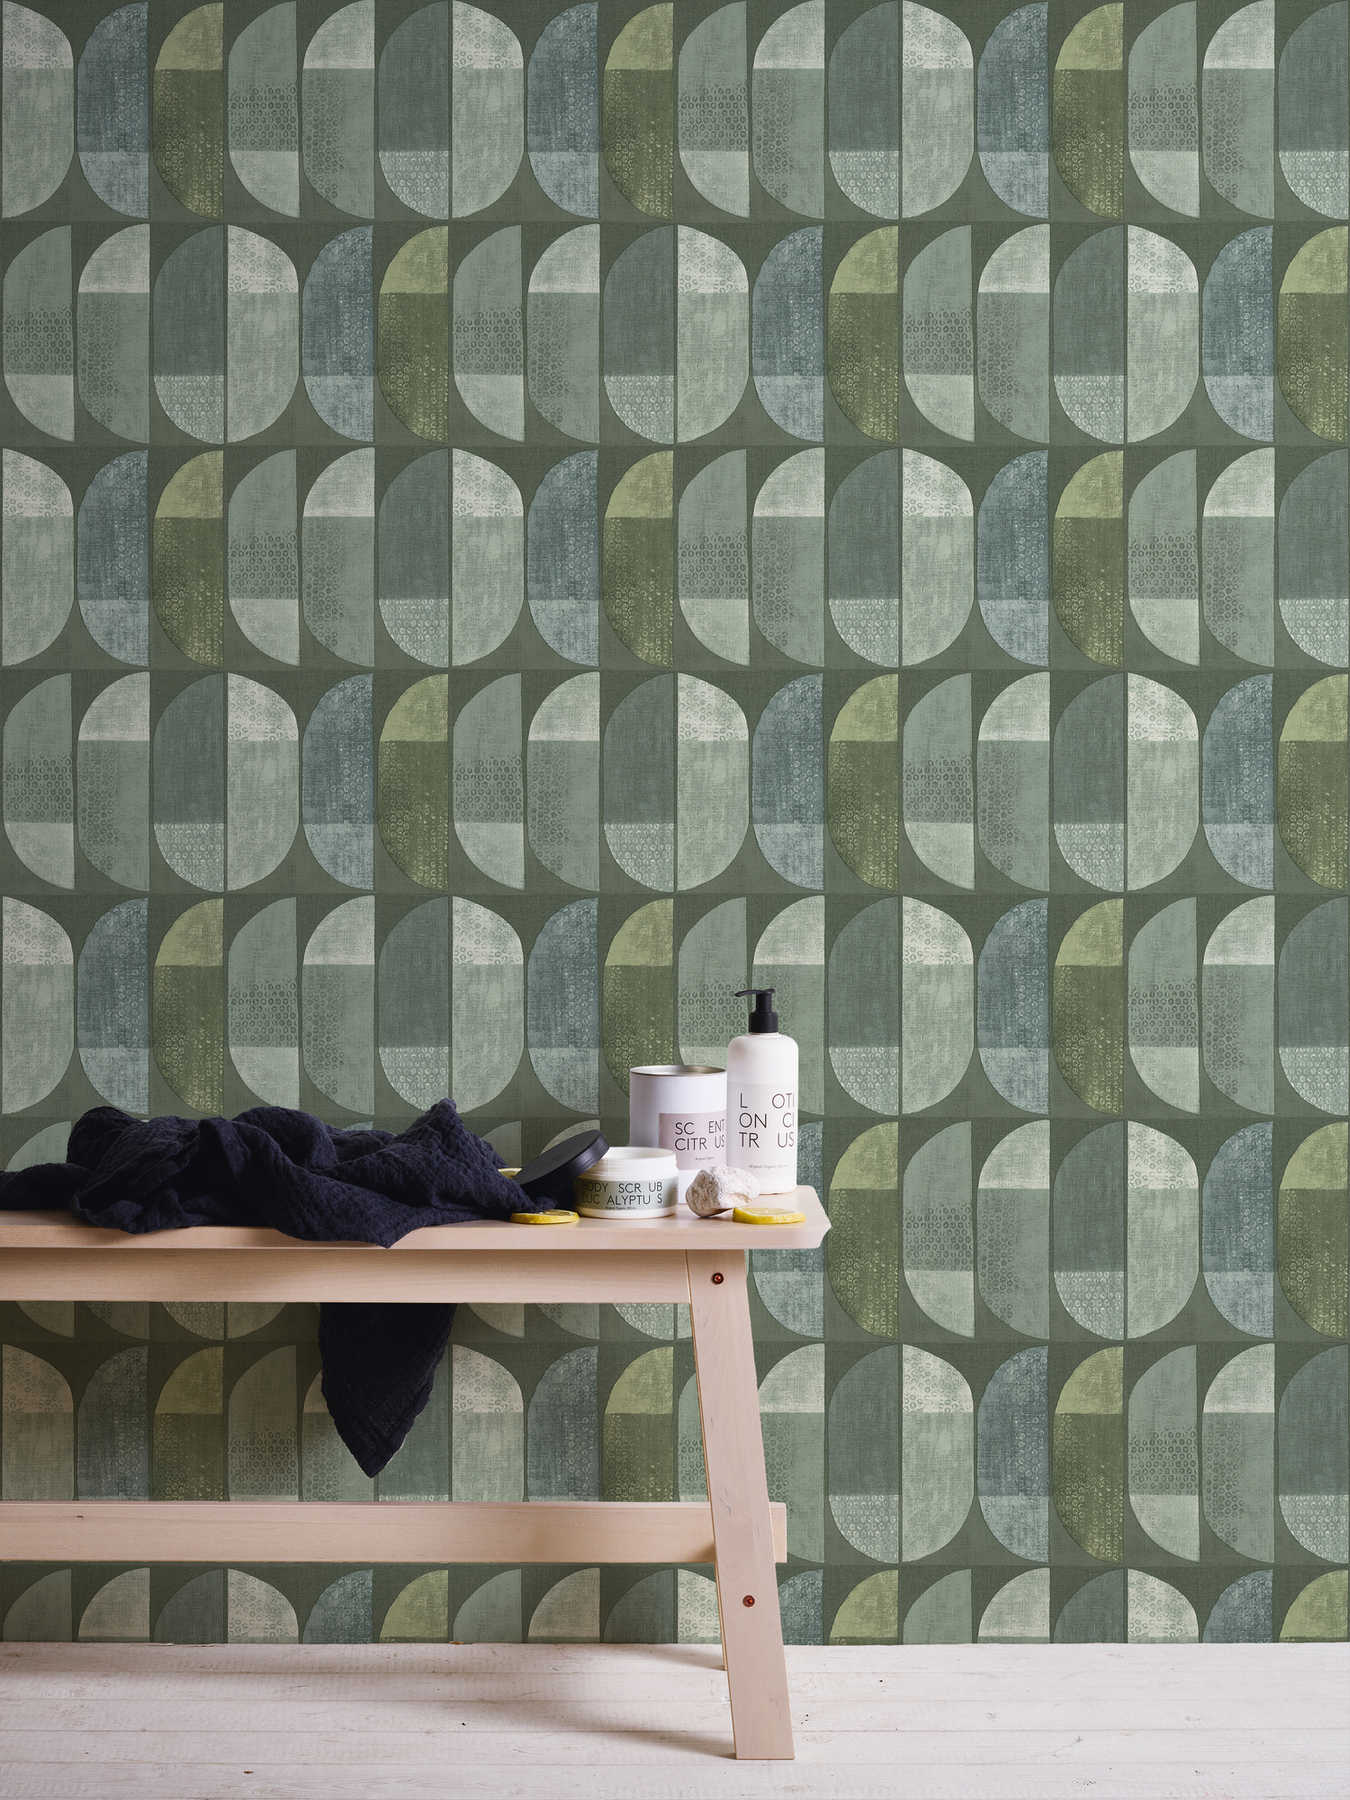             behang geometrisch retro patroon, Scandinavische stijl - groen
        